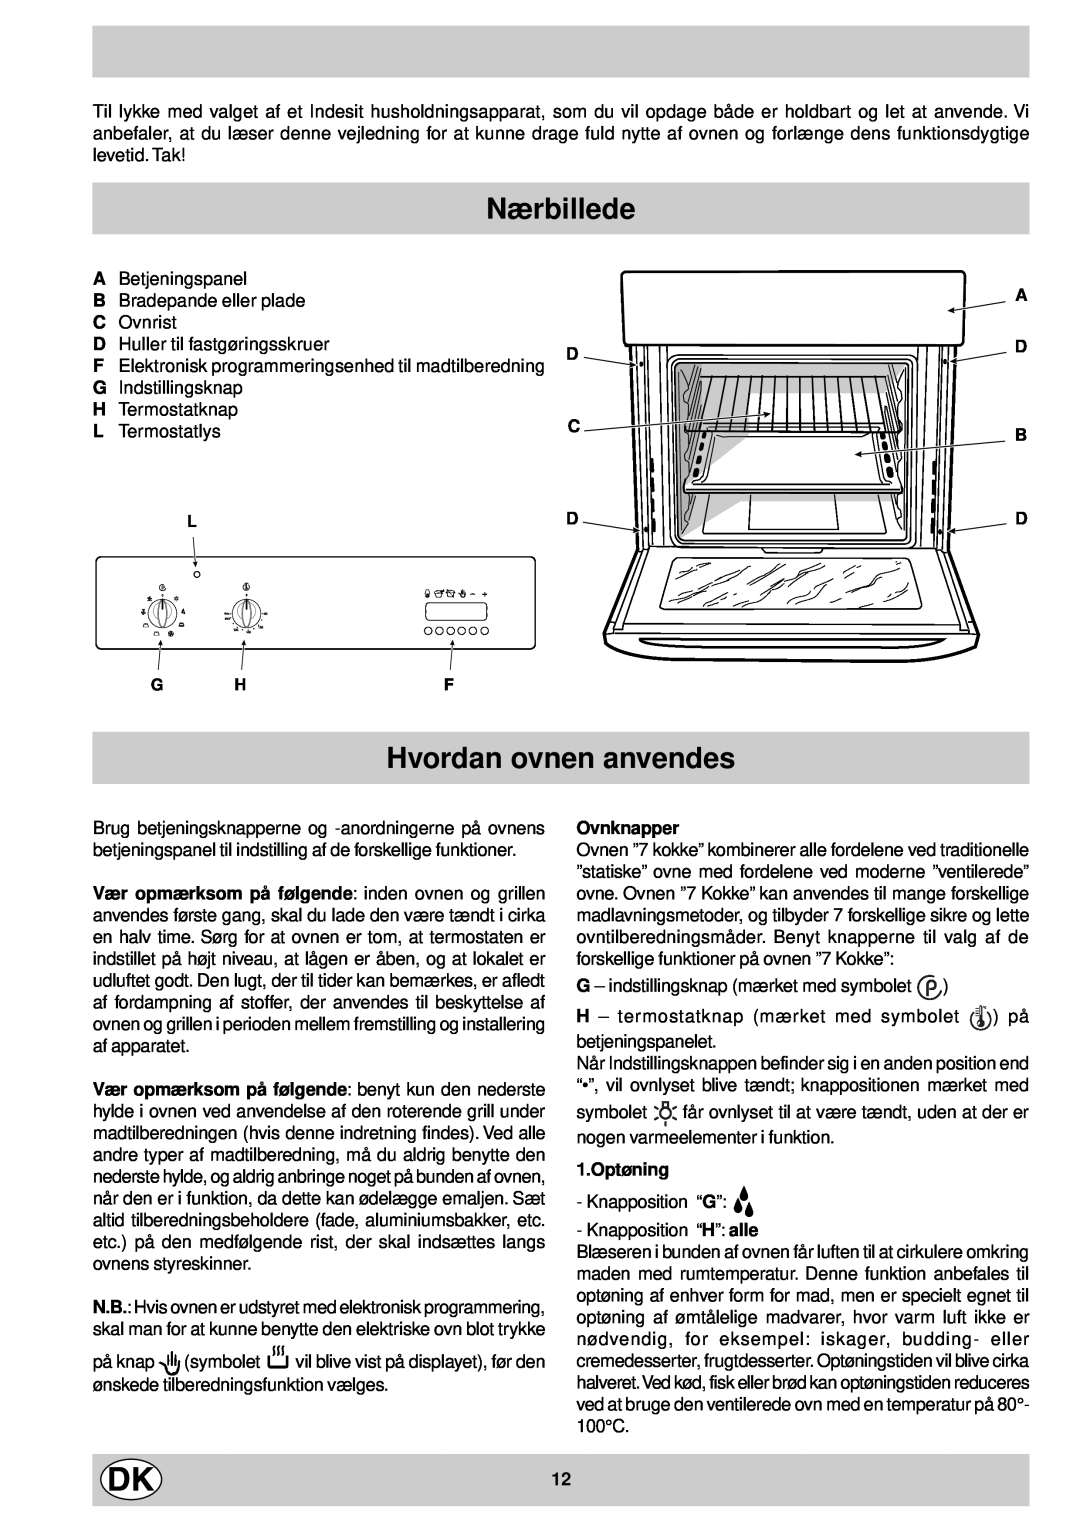 Indesit FM 37K IX DK manual Nærbillede, Hvordan ovnen anvendes, A D B, Ovnknapper, 1.Optøning 